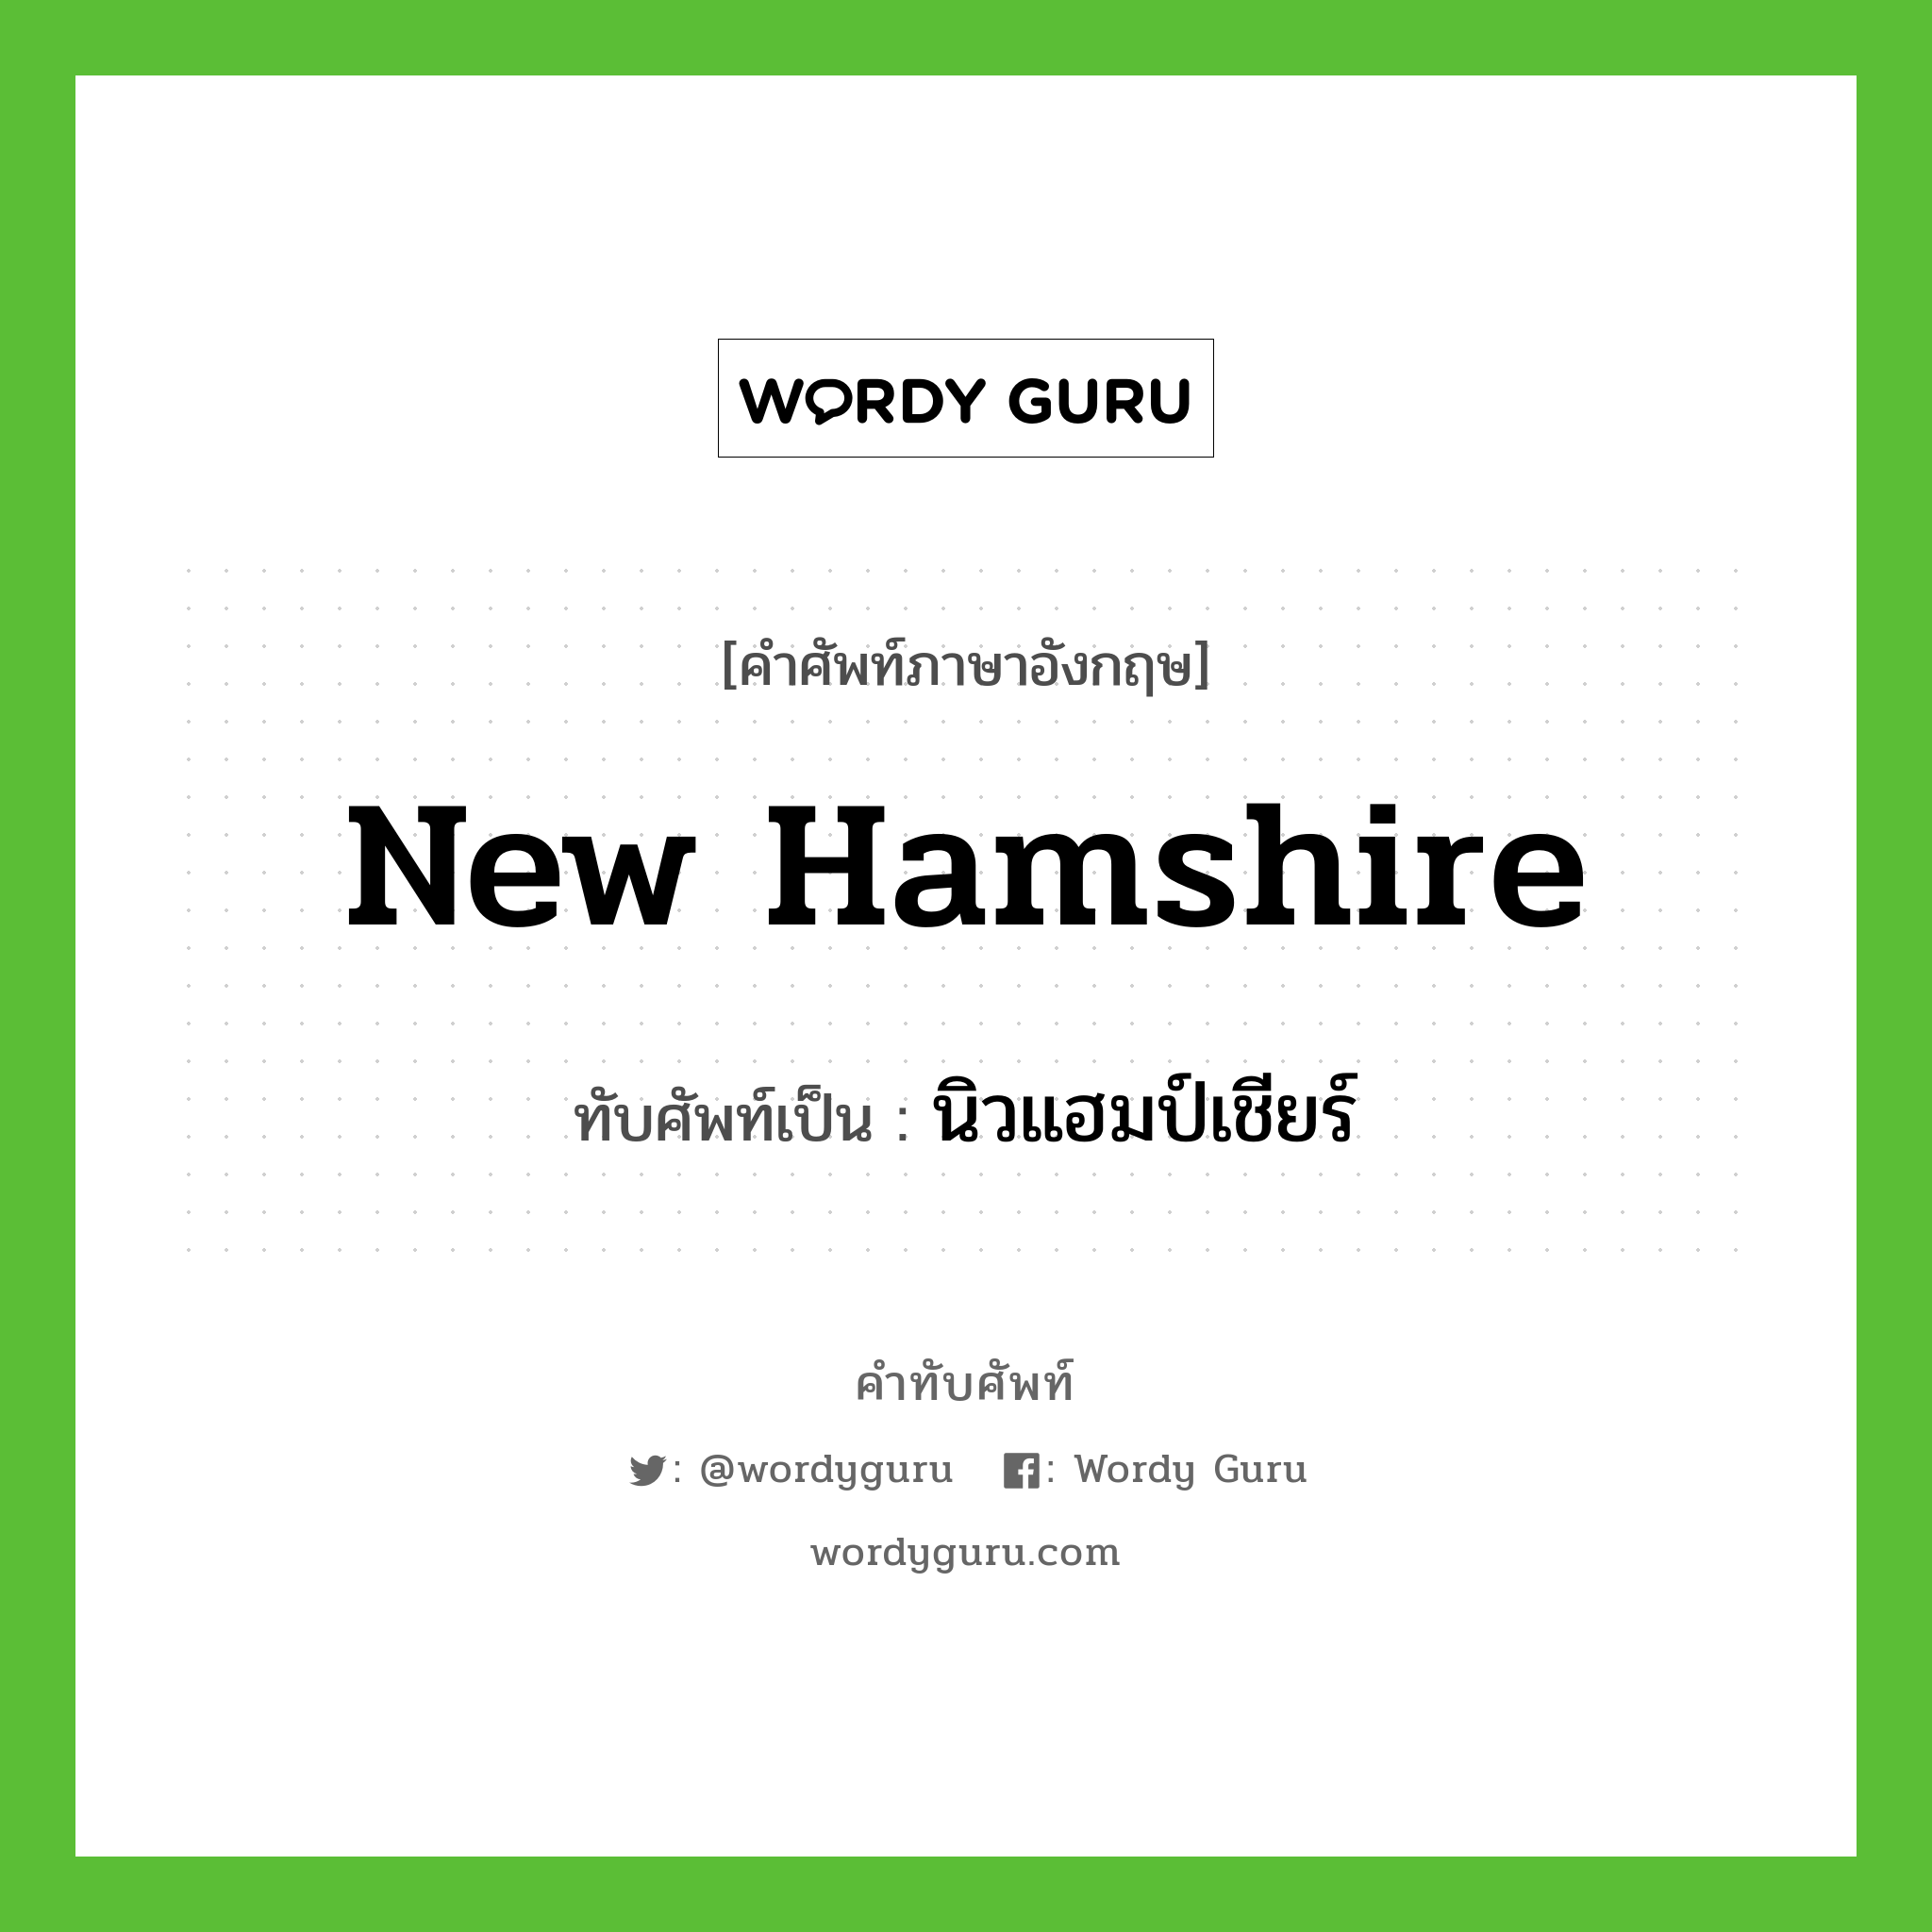 New Hamshire เขียนเป็นคำไทยว่าอะไร?, คำศัพท์ภาษาอังกฤษ New Hamshire ทับศัพท์เป็น นิวแฮมป์เชียร์